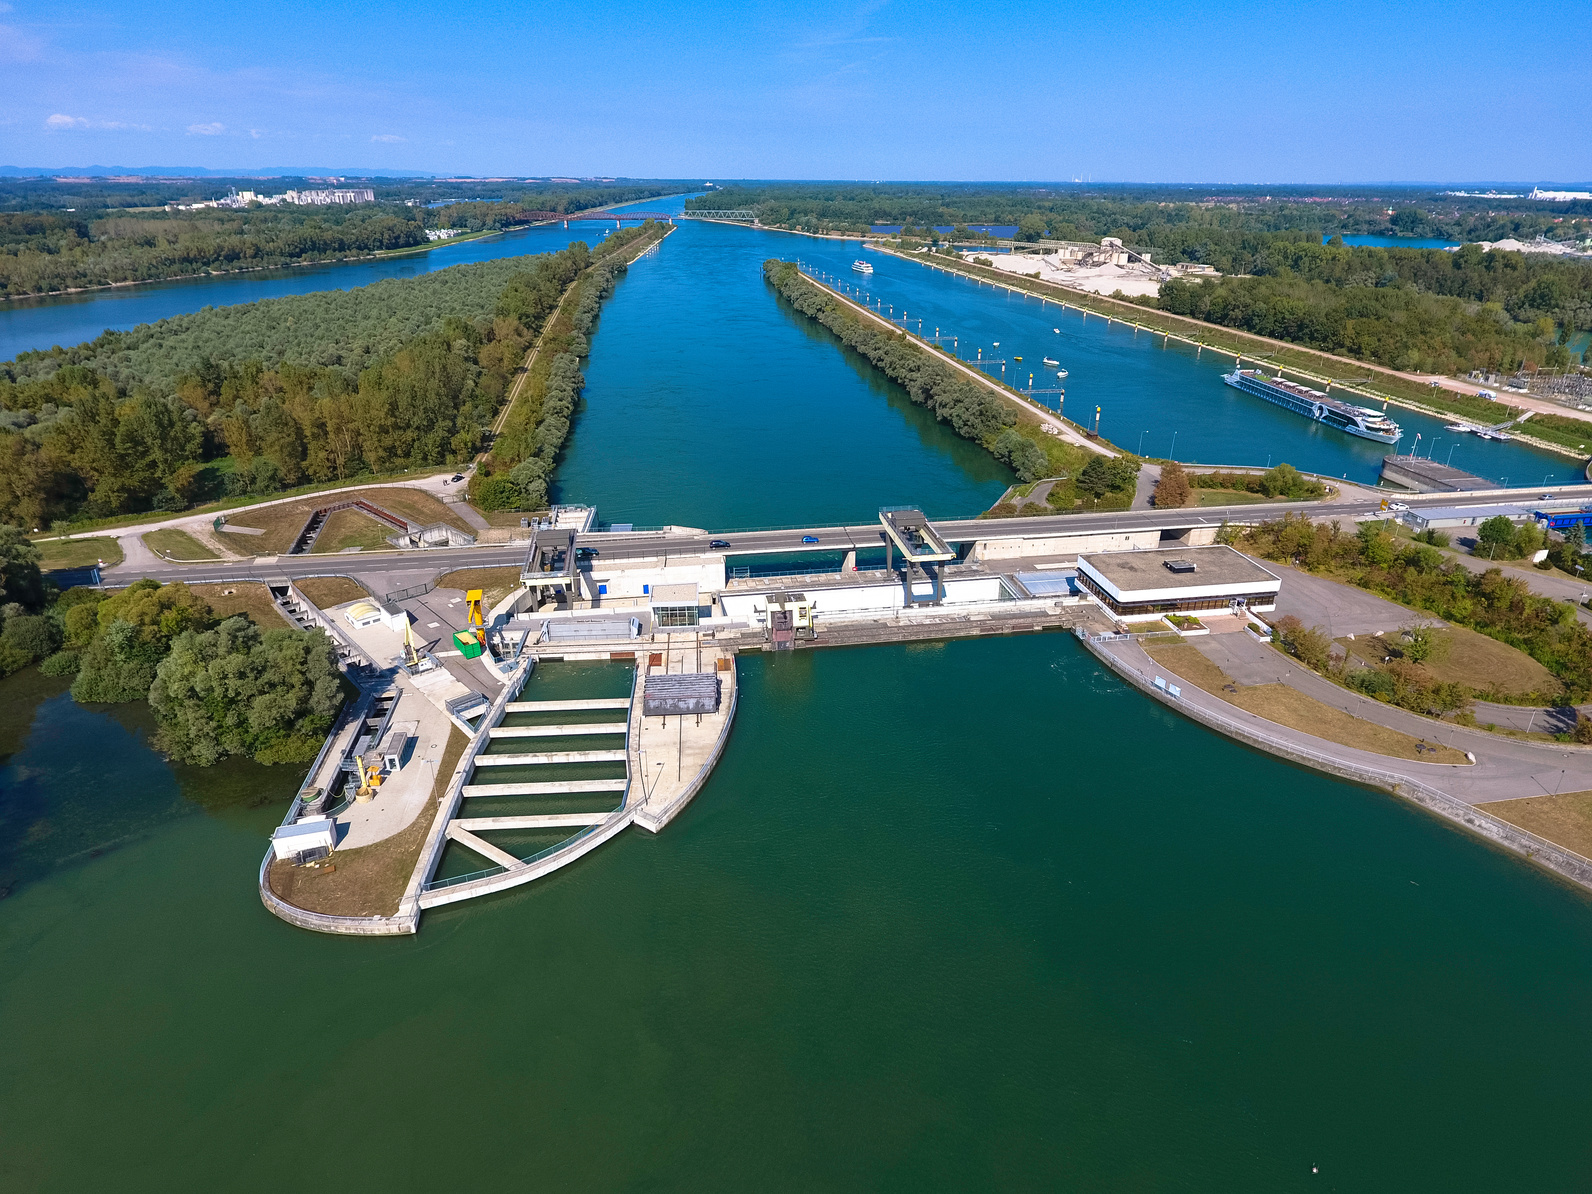 Foto: Das Wasserkraftwerk Iffezheim samt Staustufe am stark ausgebauten und begradigten Rhein. Im Vordergrund ist ein großer Fischpass zu sehen.